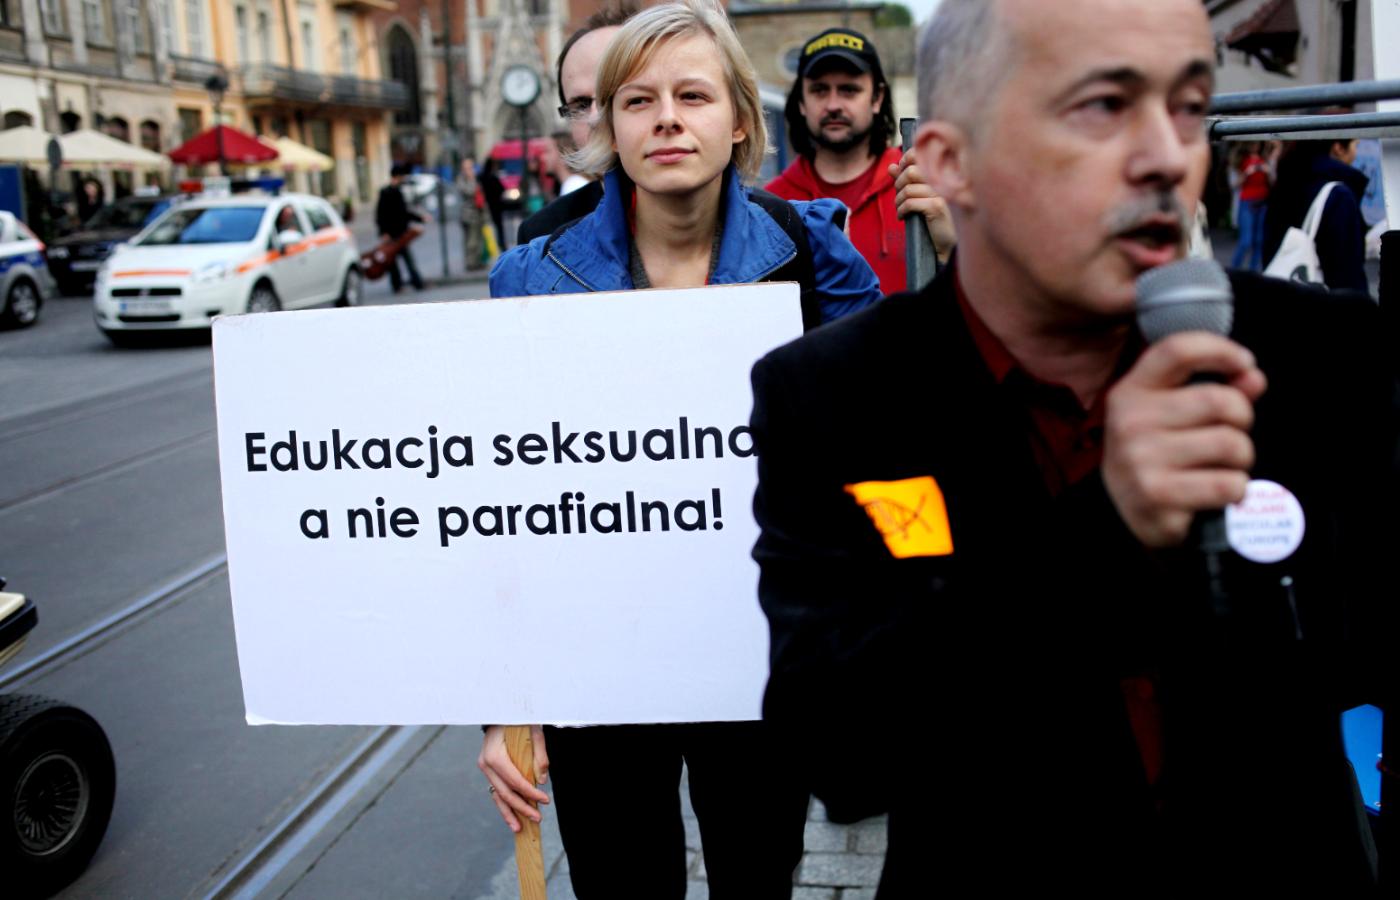 Samorządy próbują wprowadzać edukację seksualną do szkół wbrew Kościołowi i prawicowym politykom. Na zdjęciu Marsz świeckości w Krakowie w 2015 r.